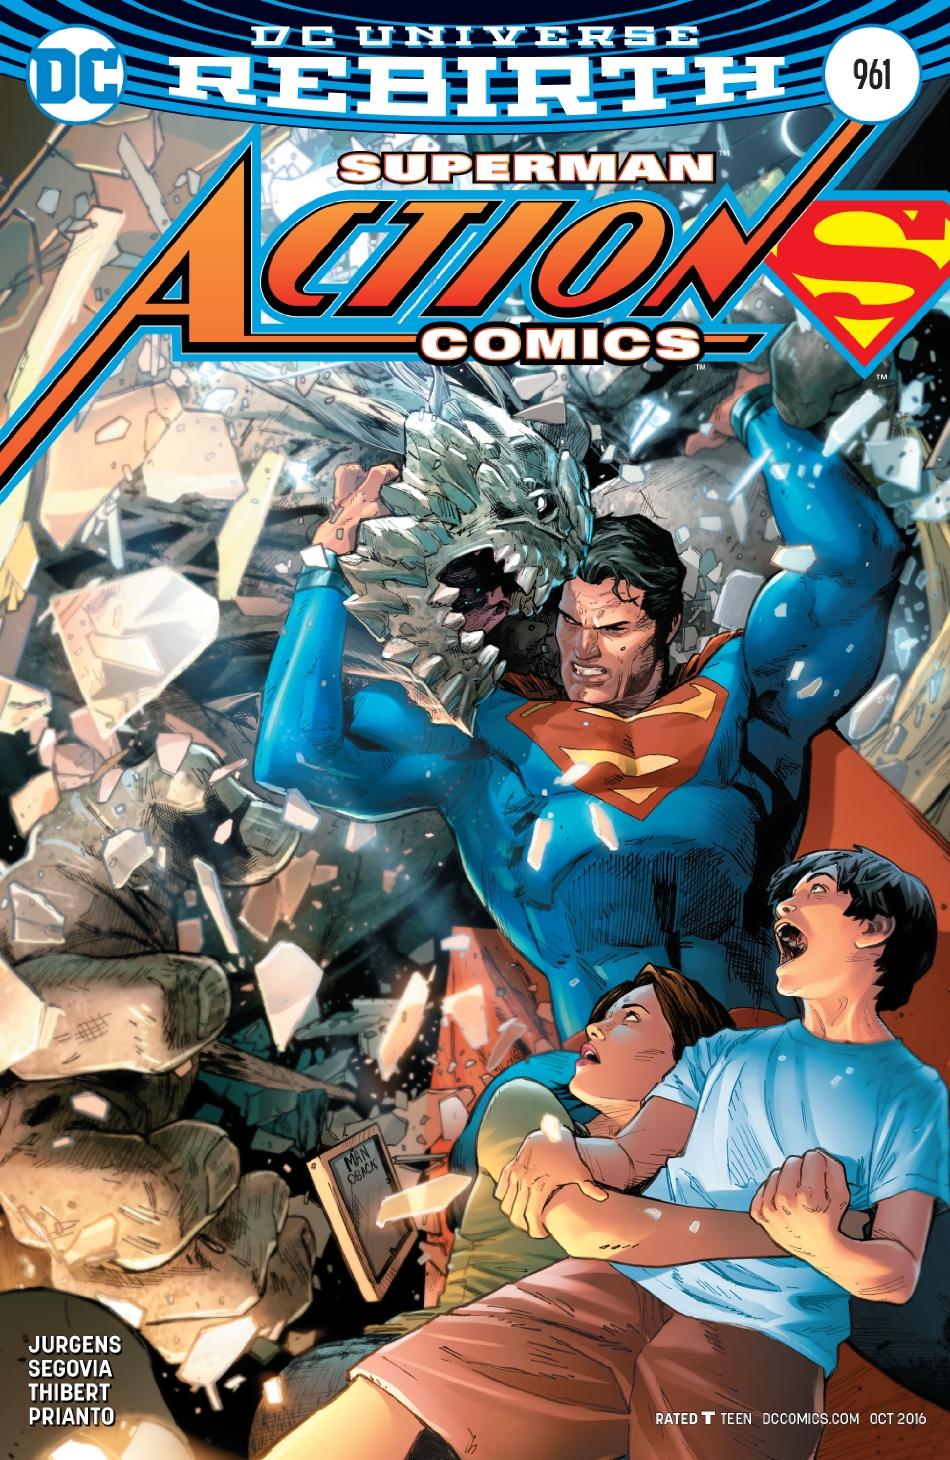 Action Comics Vol. 1 #961